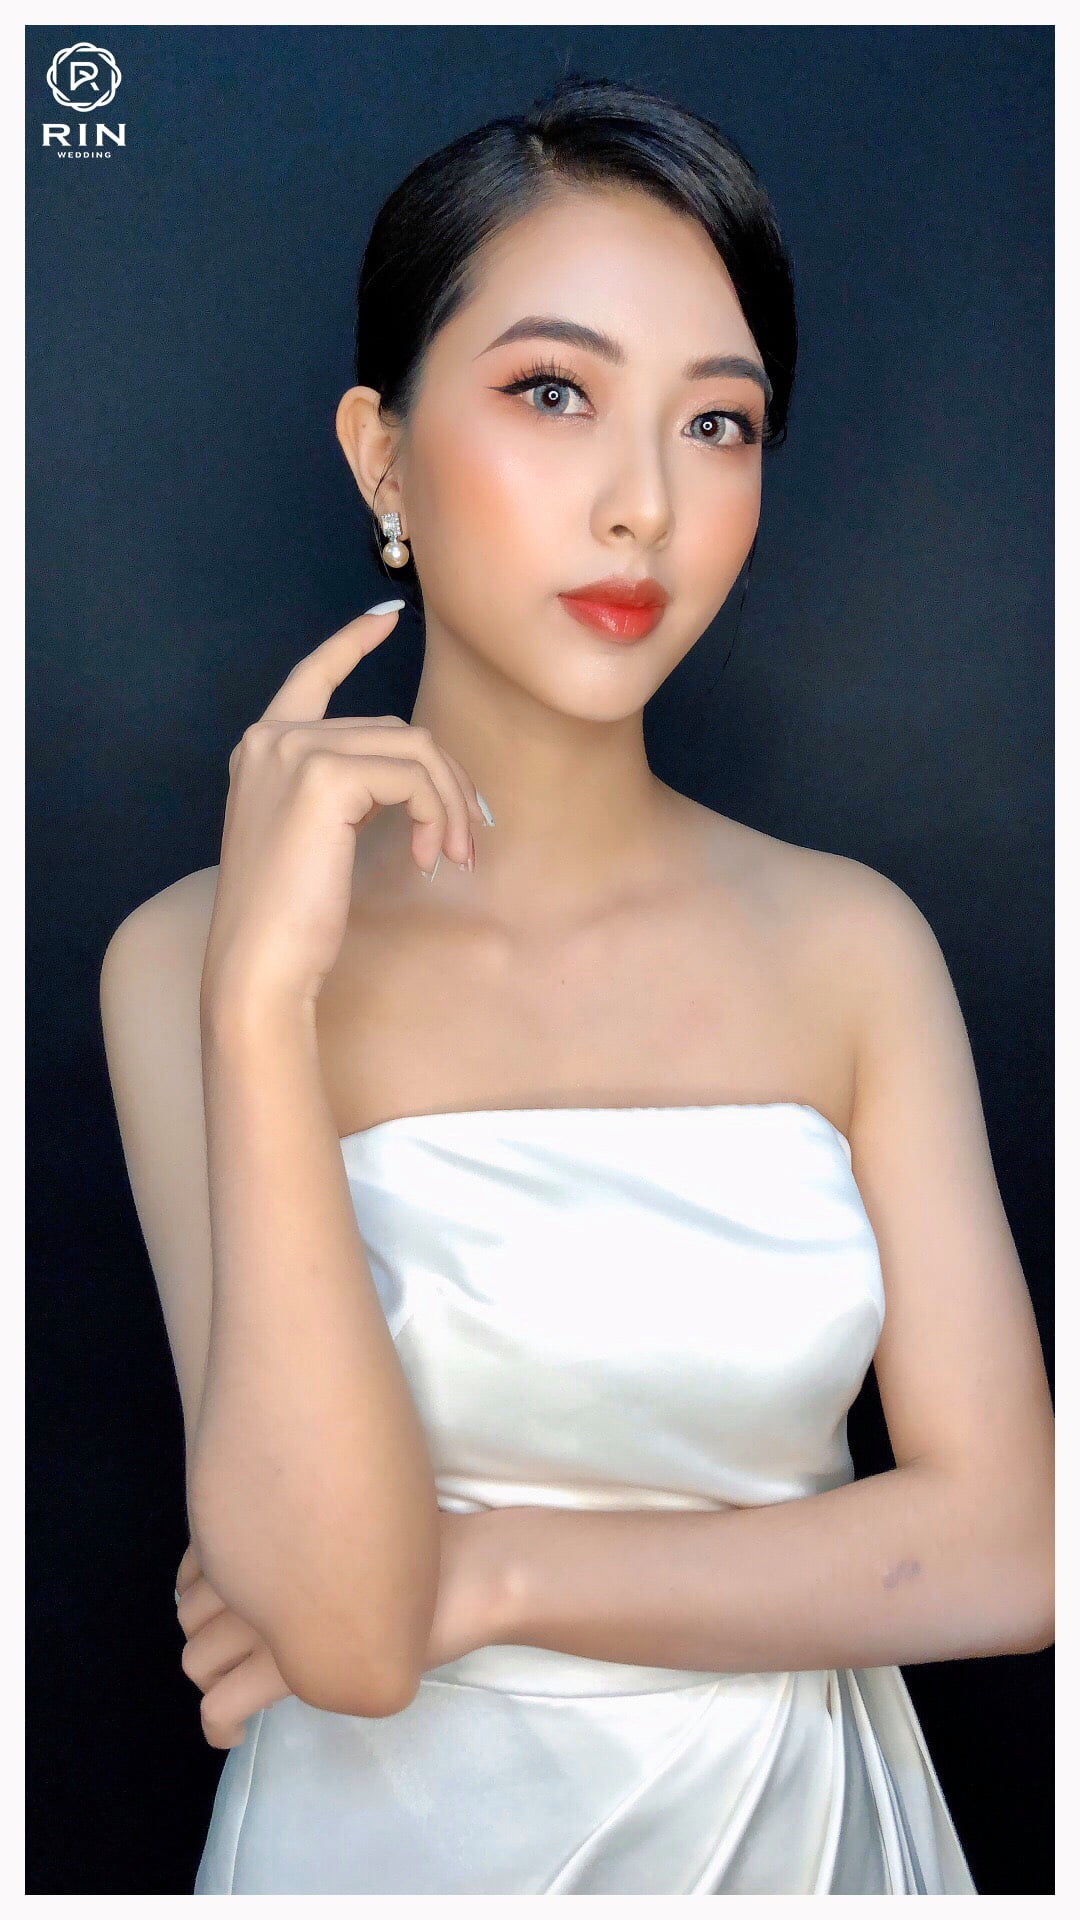 Top 7 tiệm trang điểm cô dâu đẹp nhất tại Đà Nẵng -  Rin Wedding